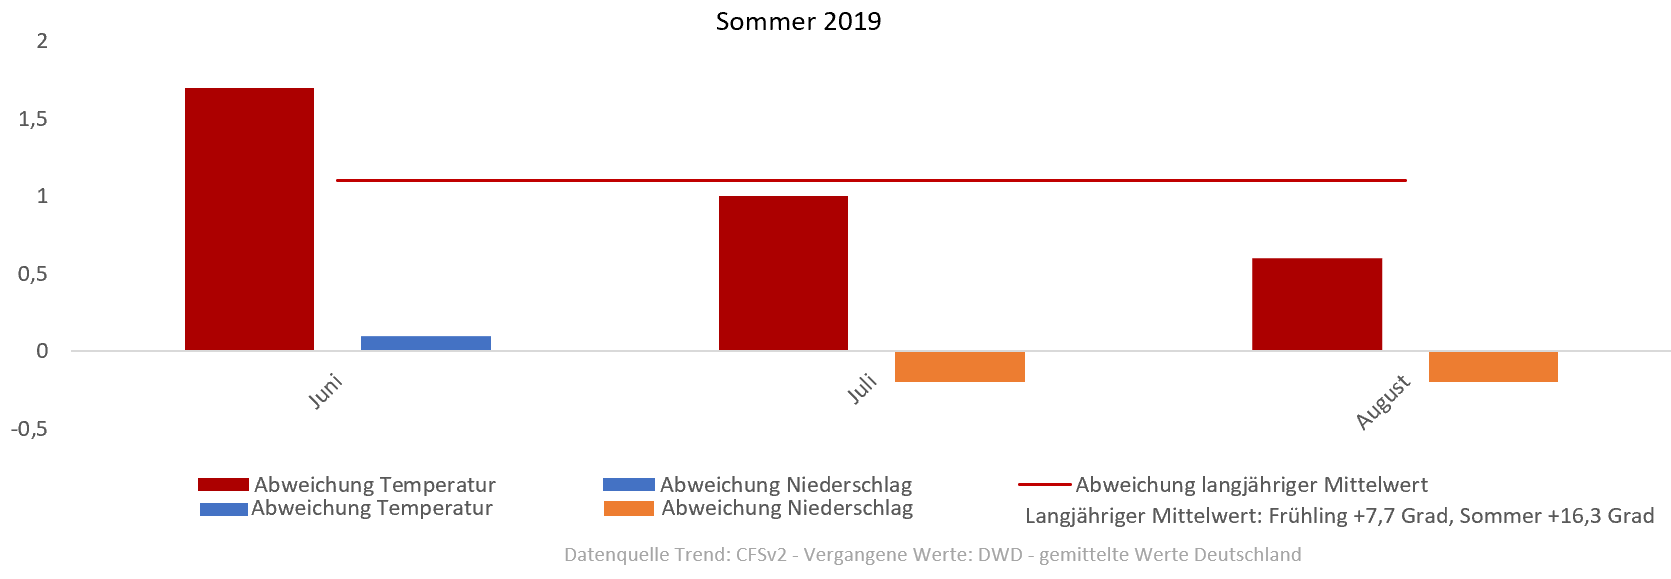 Diagramm der Temperaturentwicklung Sommer 2019 vom 05.06.2019